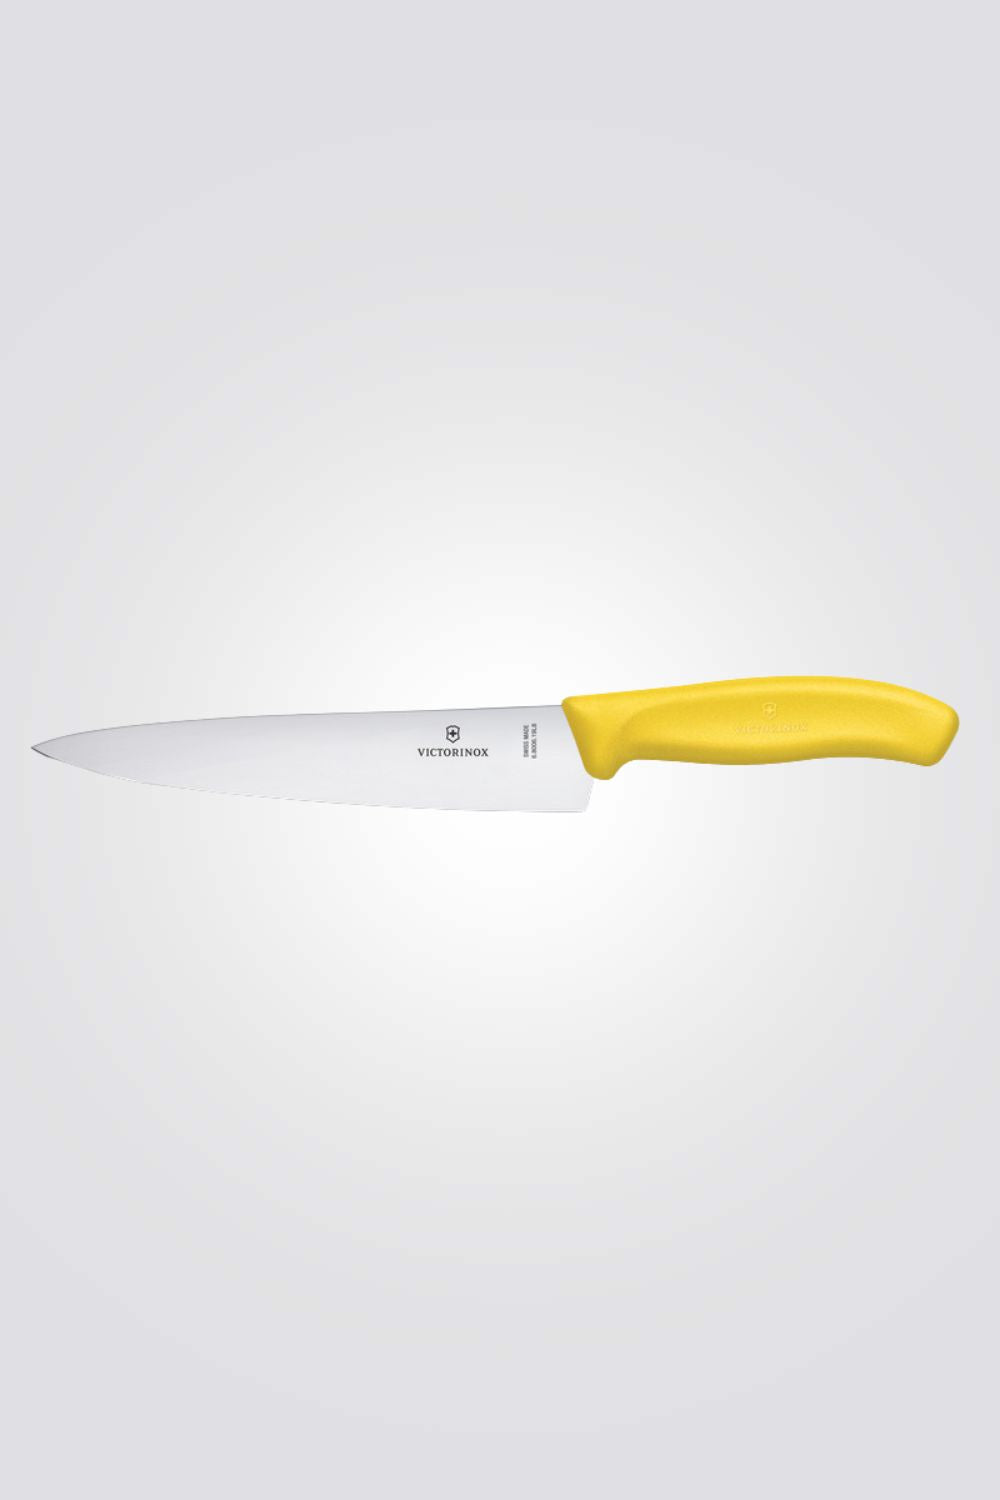 סכין שף Swiss Classic צהוב